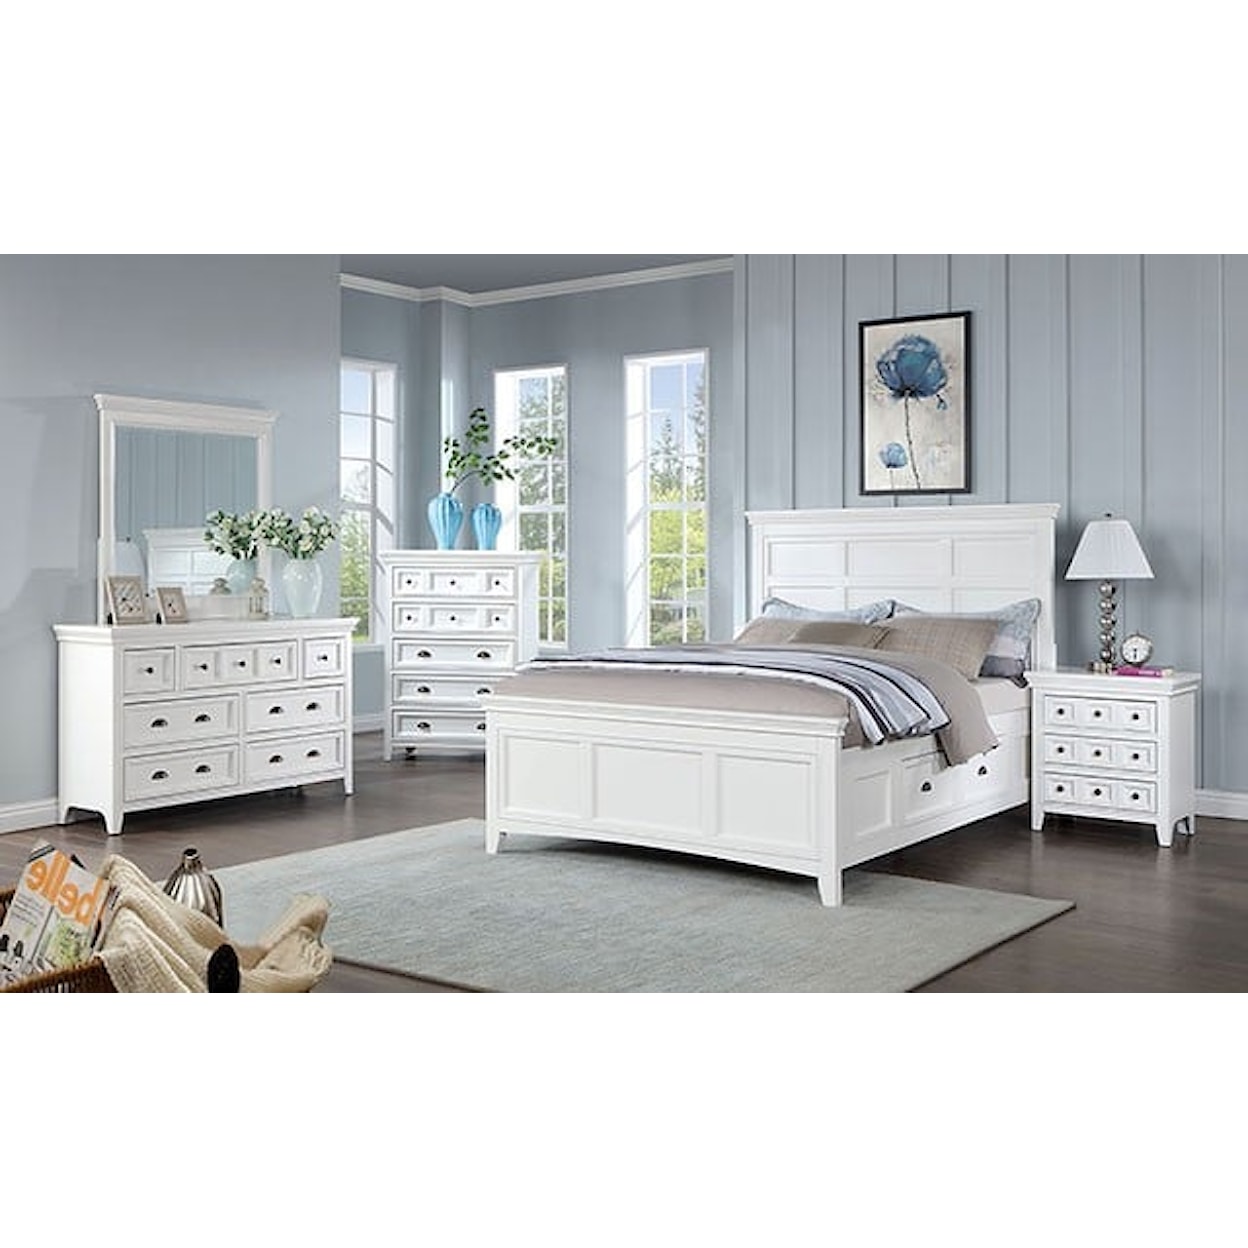 Furniture of America CASTILE 4-Piece Queen Bedroom Set